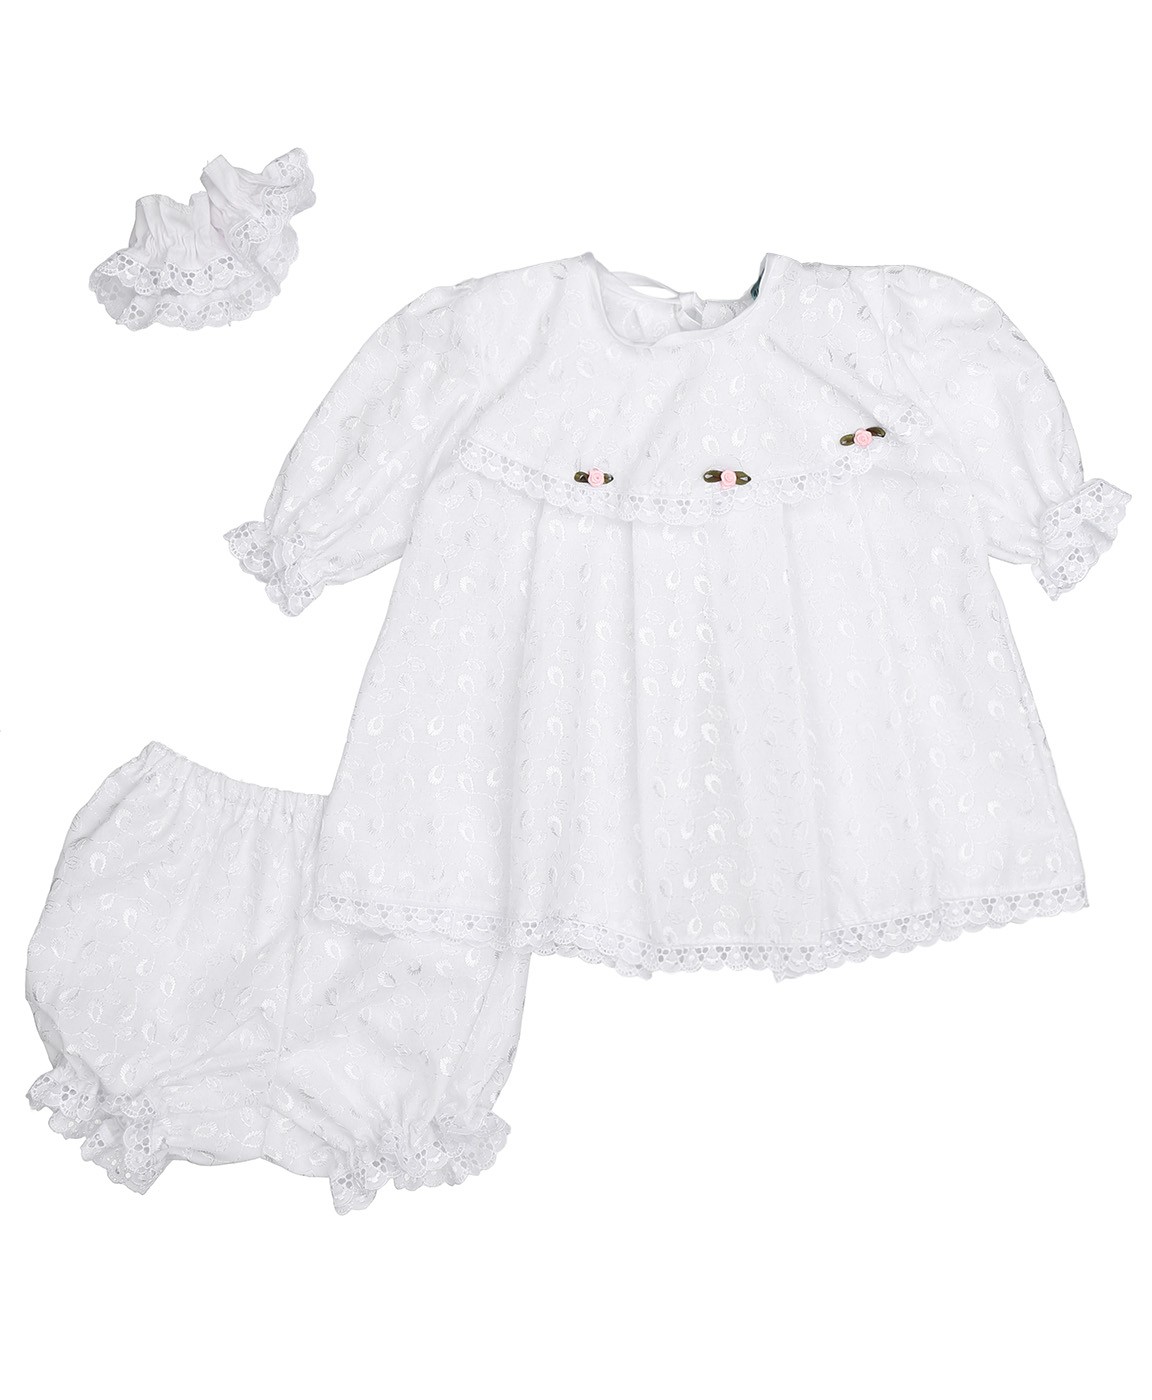 Г393-74 Крестильный комплект для девочки,р.74 Однотонное платье, штанишки, повязка,вышитое полотно - 100% хлопок для малышей от 1 до 1,5  г